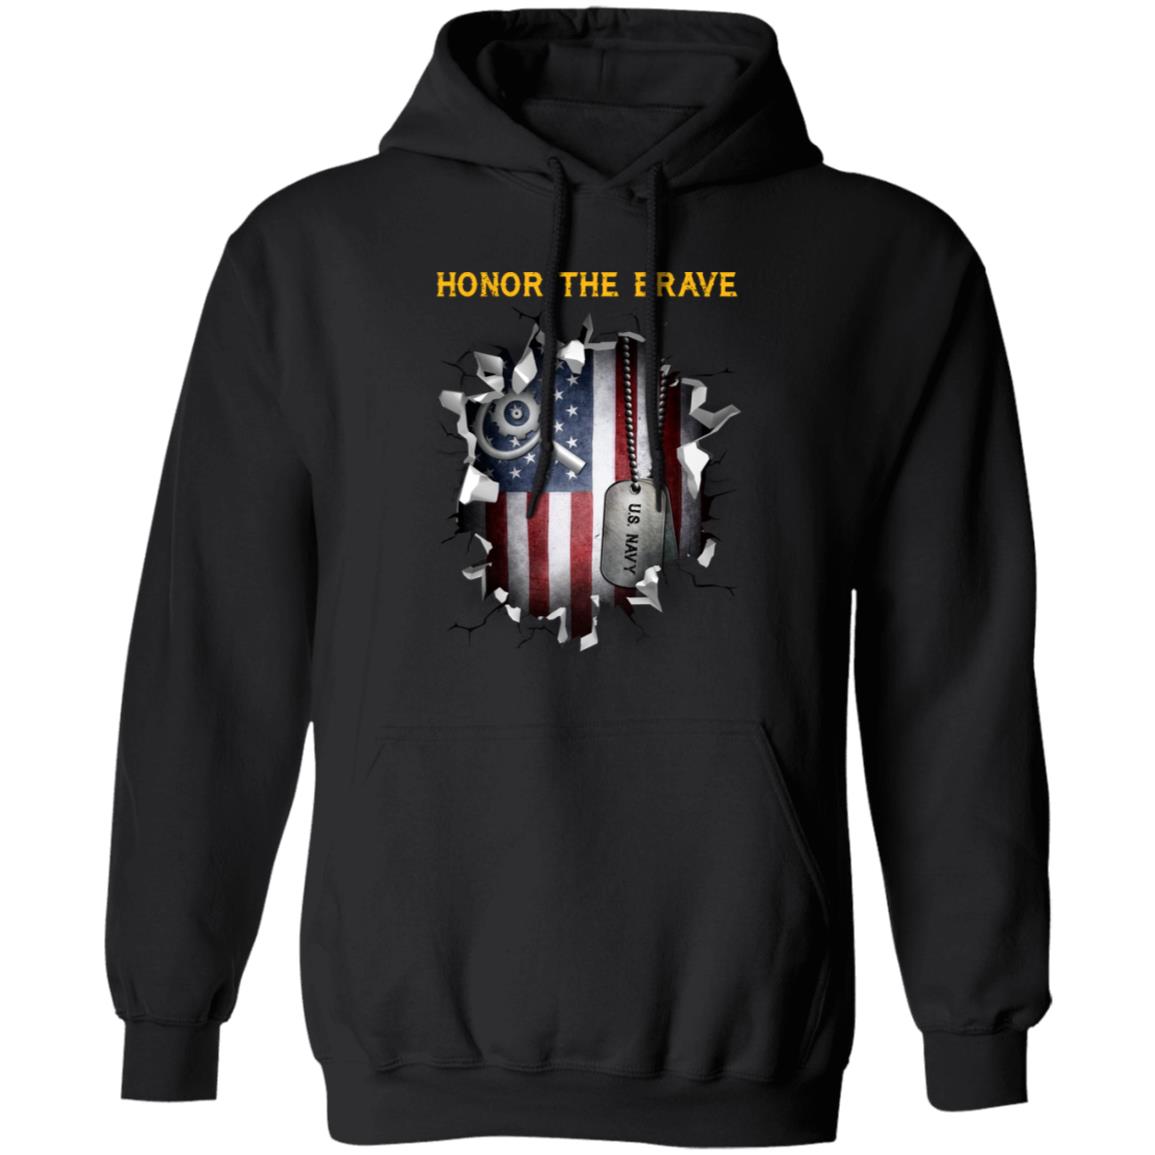 U.S Navy Machinery repairman Navy MR - Honor The Brave Front Shirt